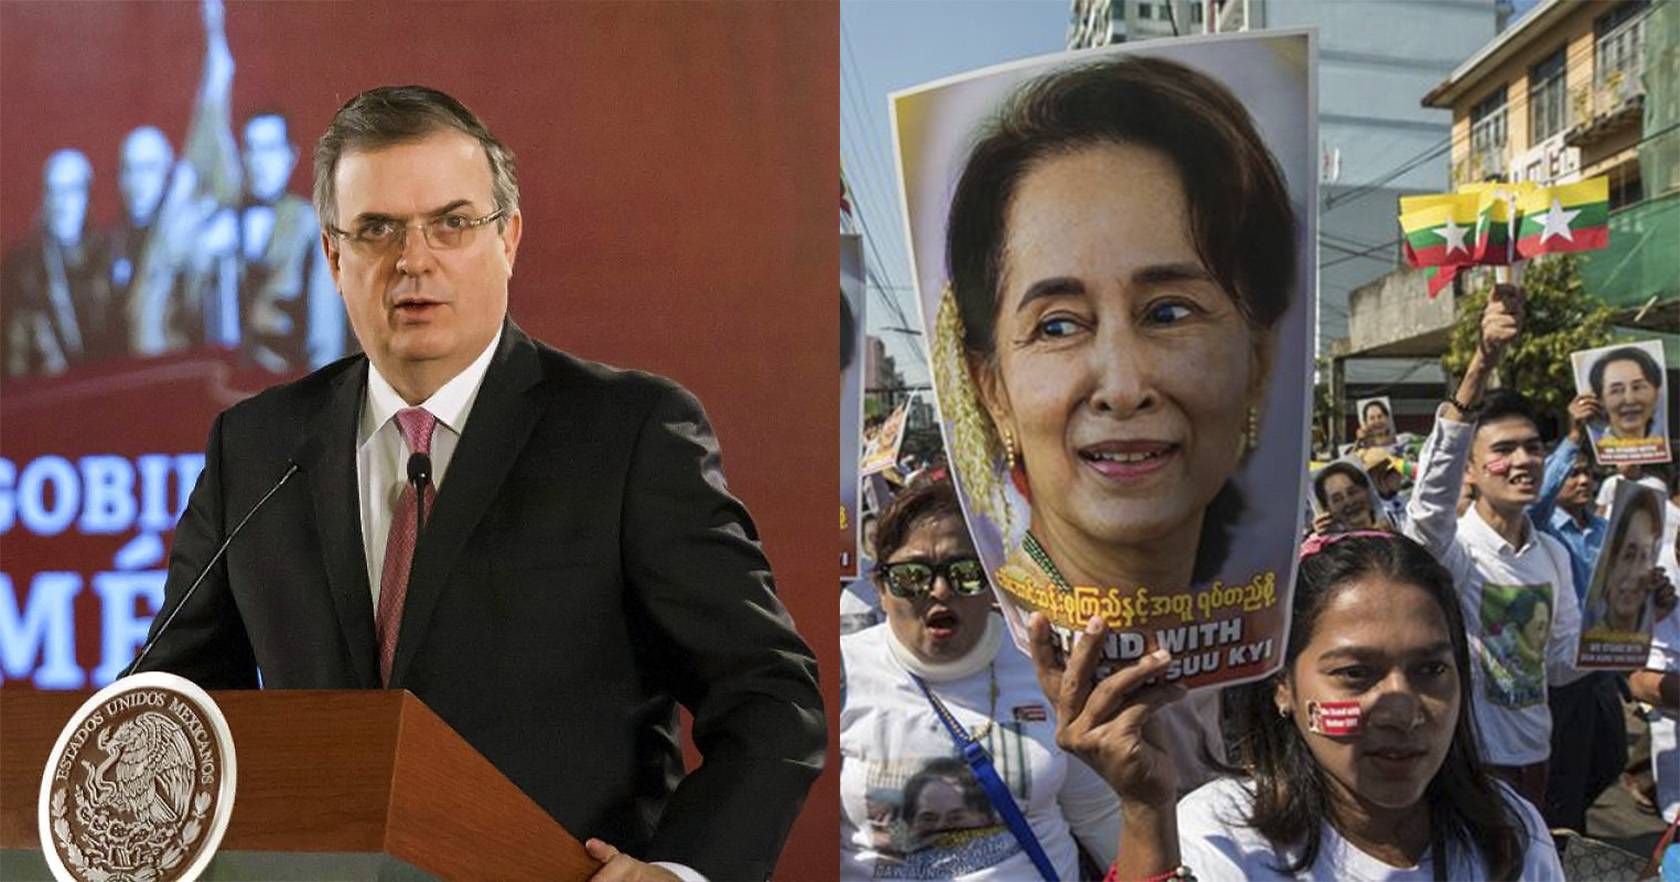 México condena la detención de líderes políticos en Myanmar (Birmania)